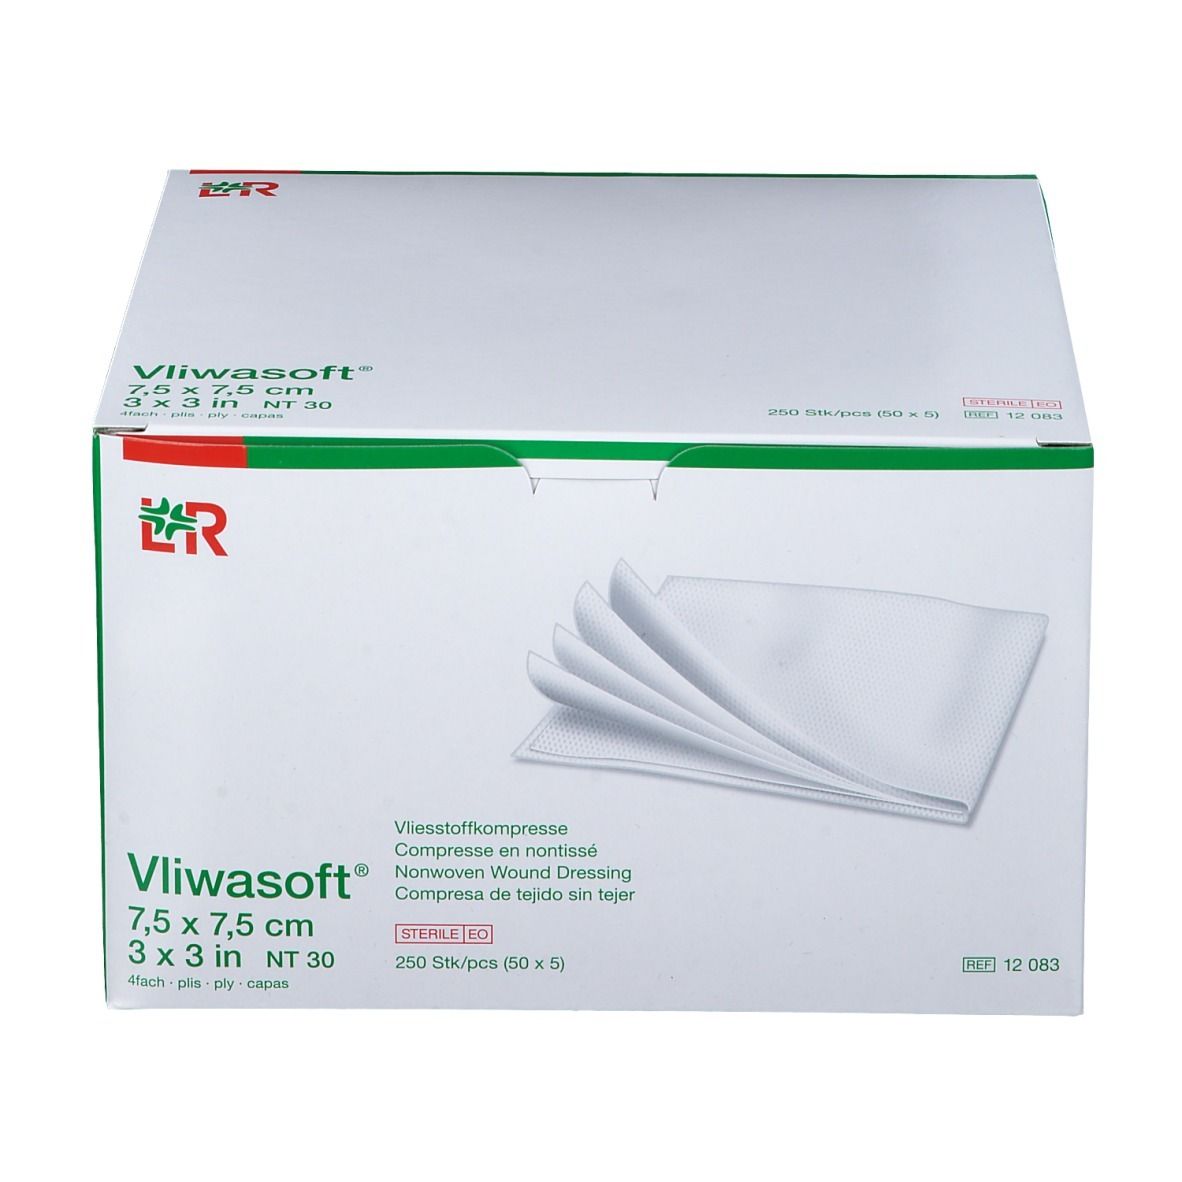 Vliwasoft® Compresse Stérile 7,5 cm x 7,5 cm